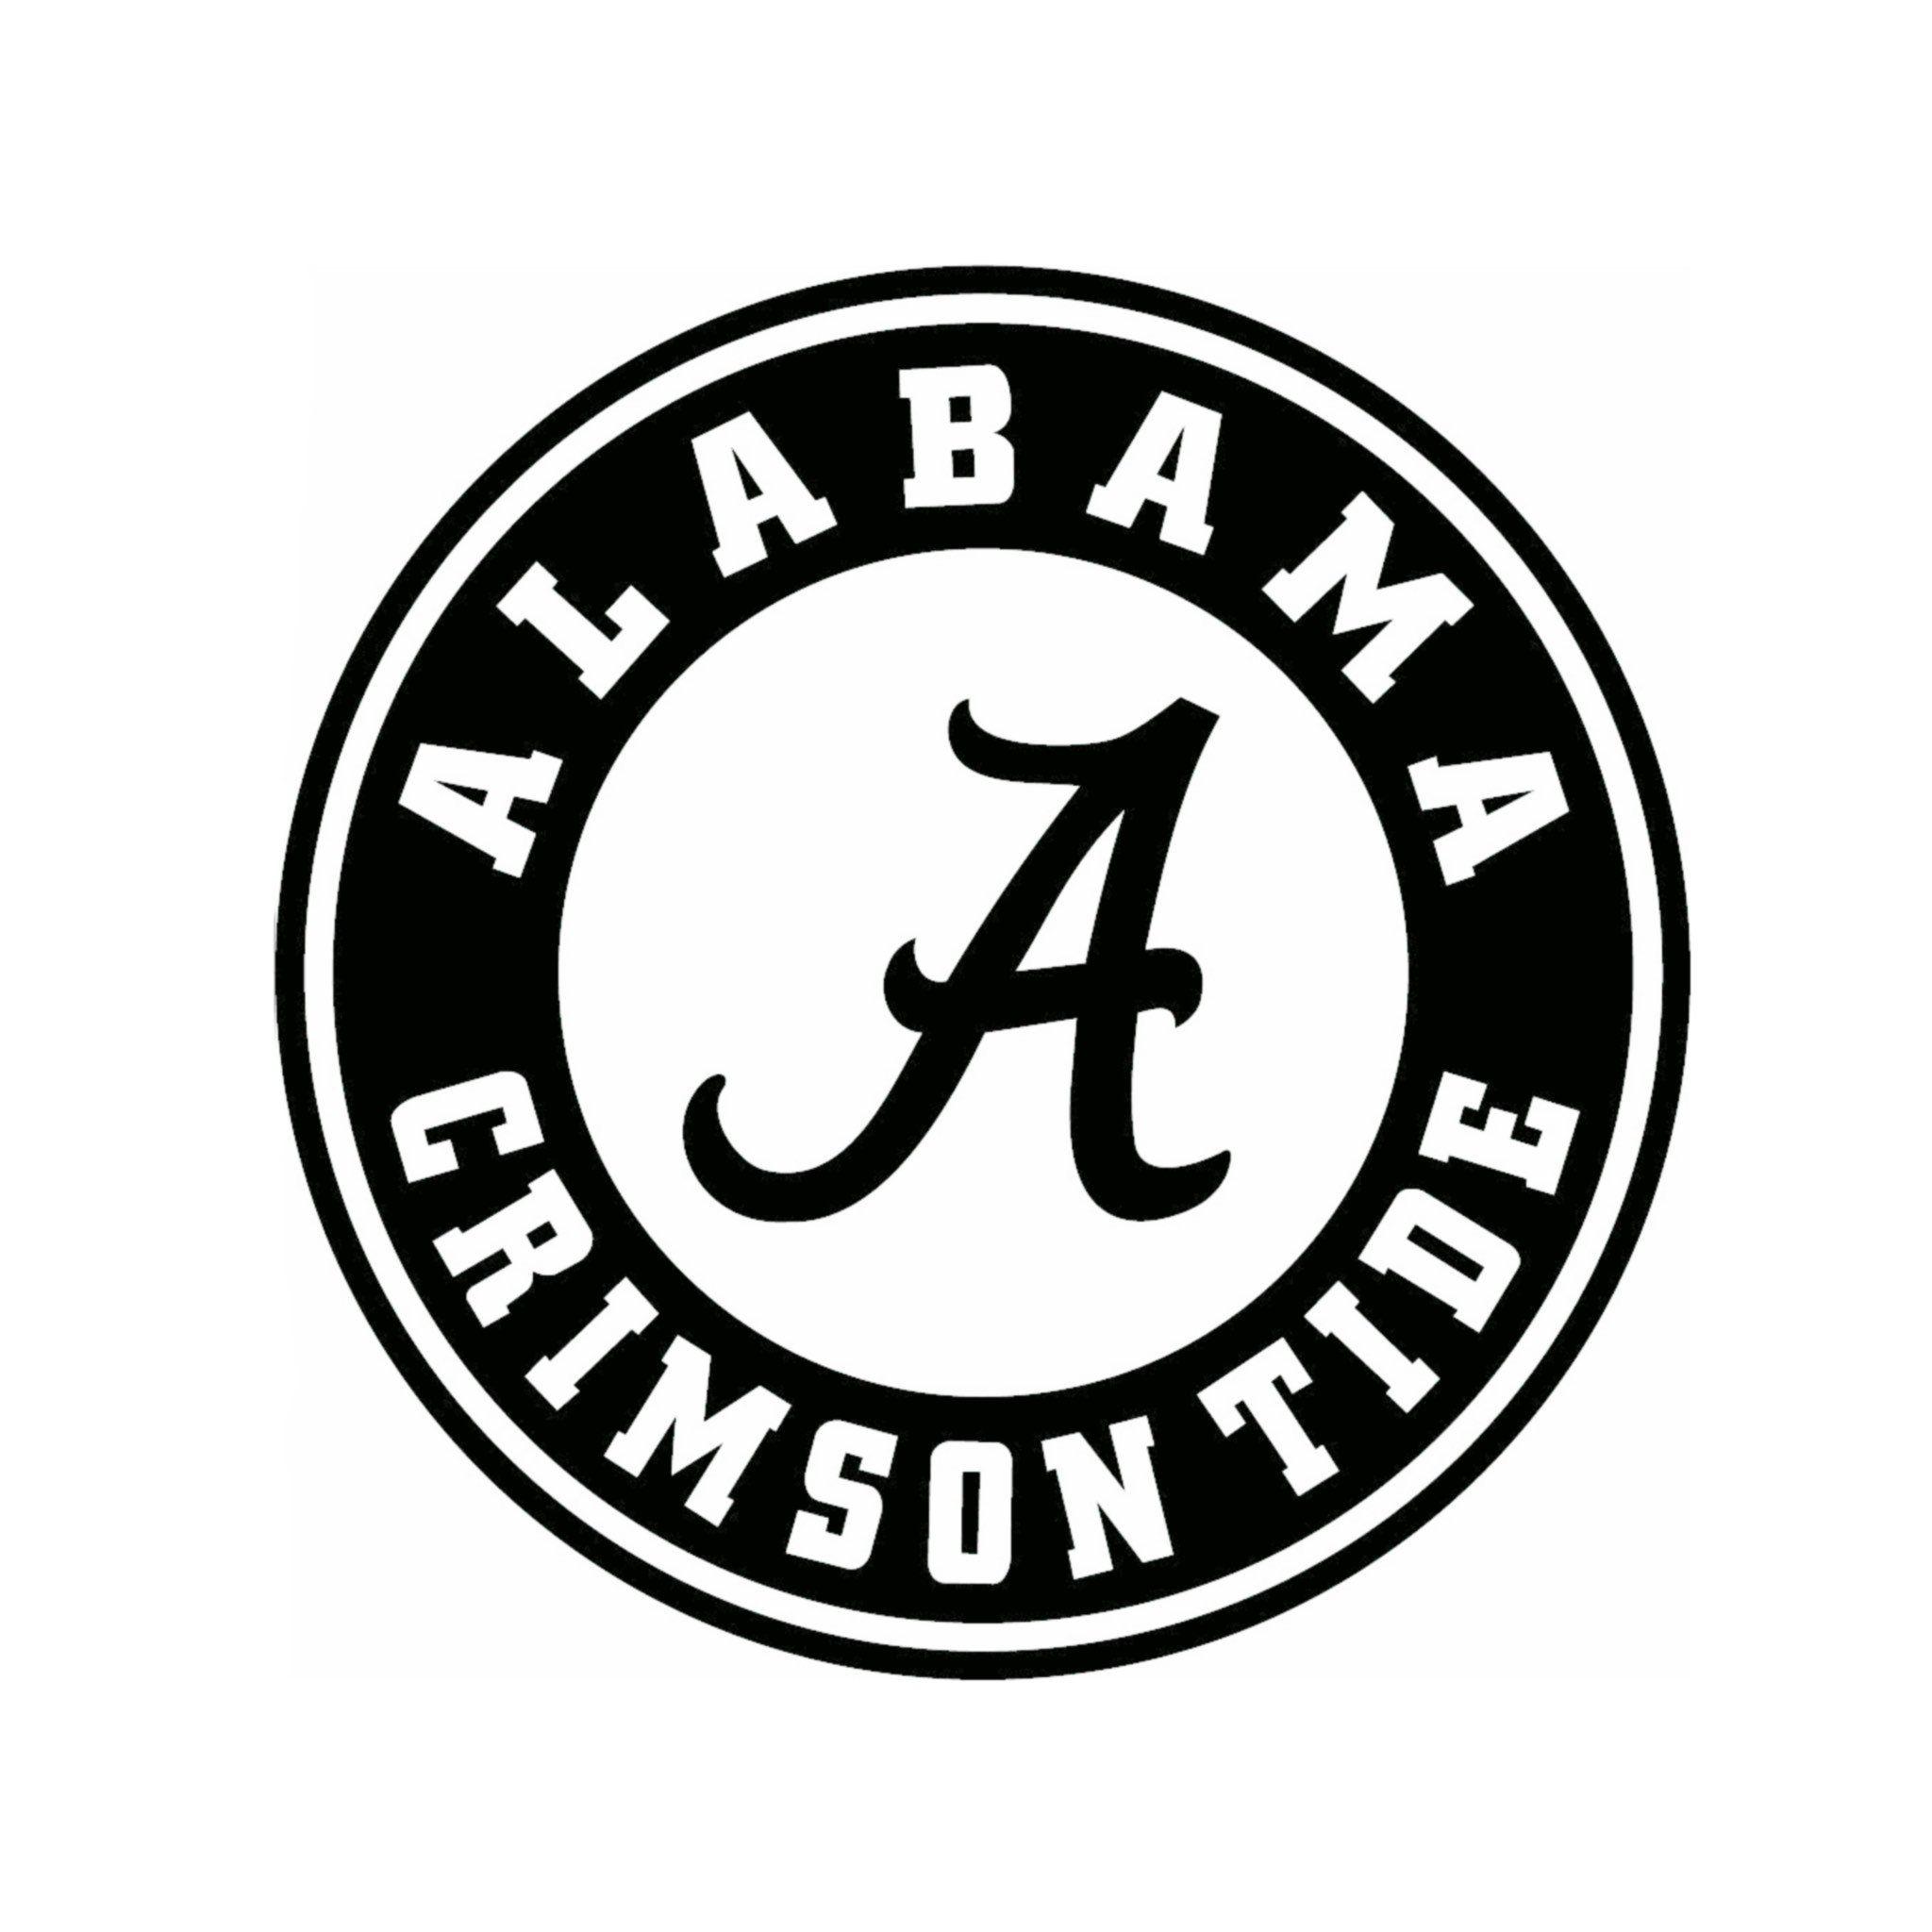 Bama Logo - Alabama Crimson Tide Bama Logo Decal | Etsy